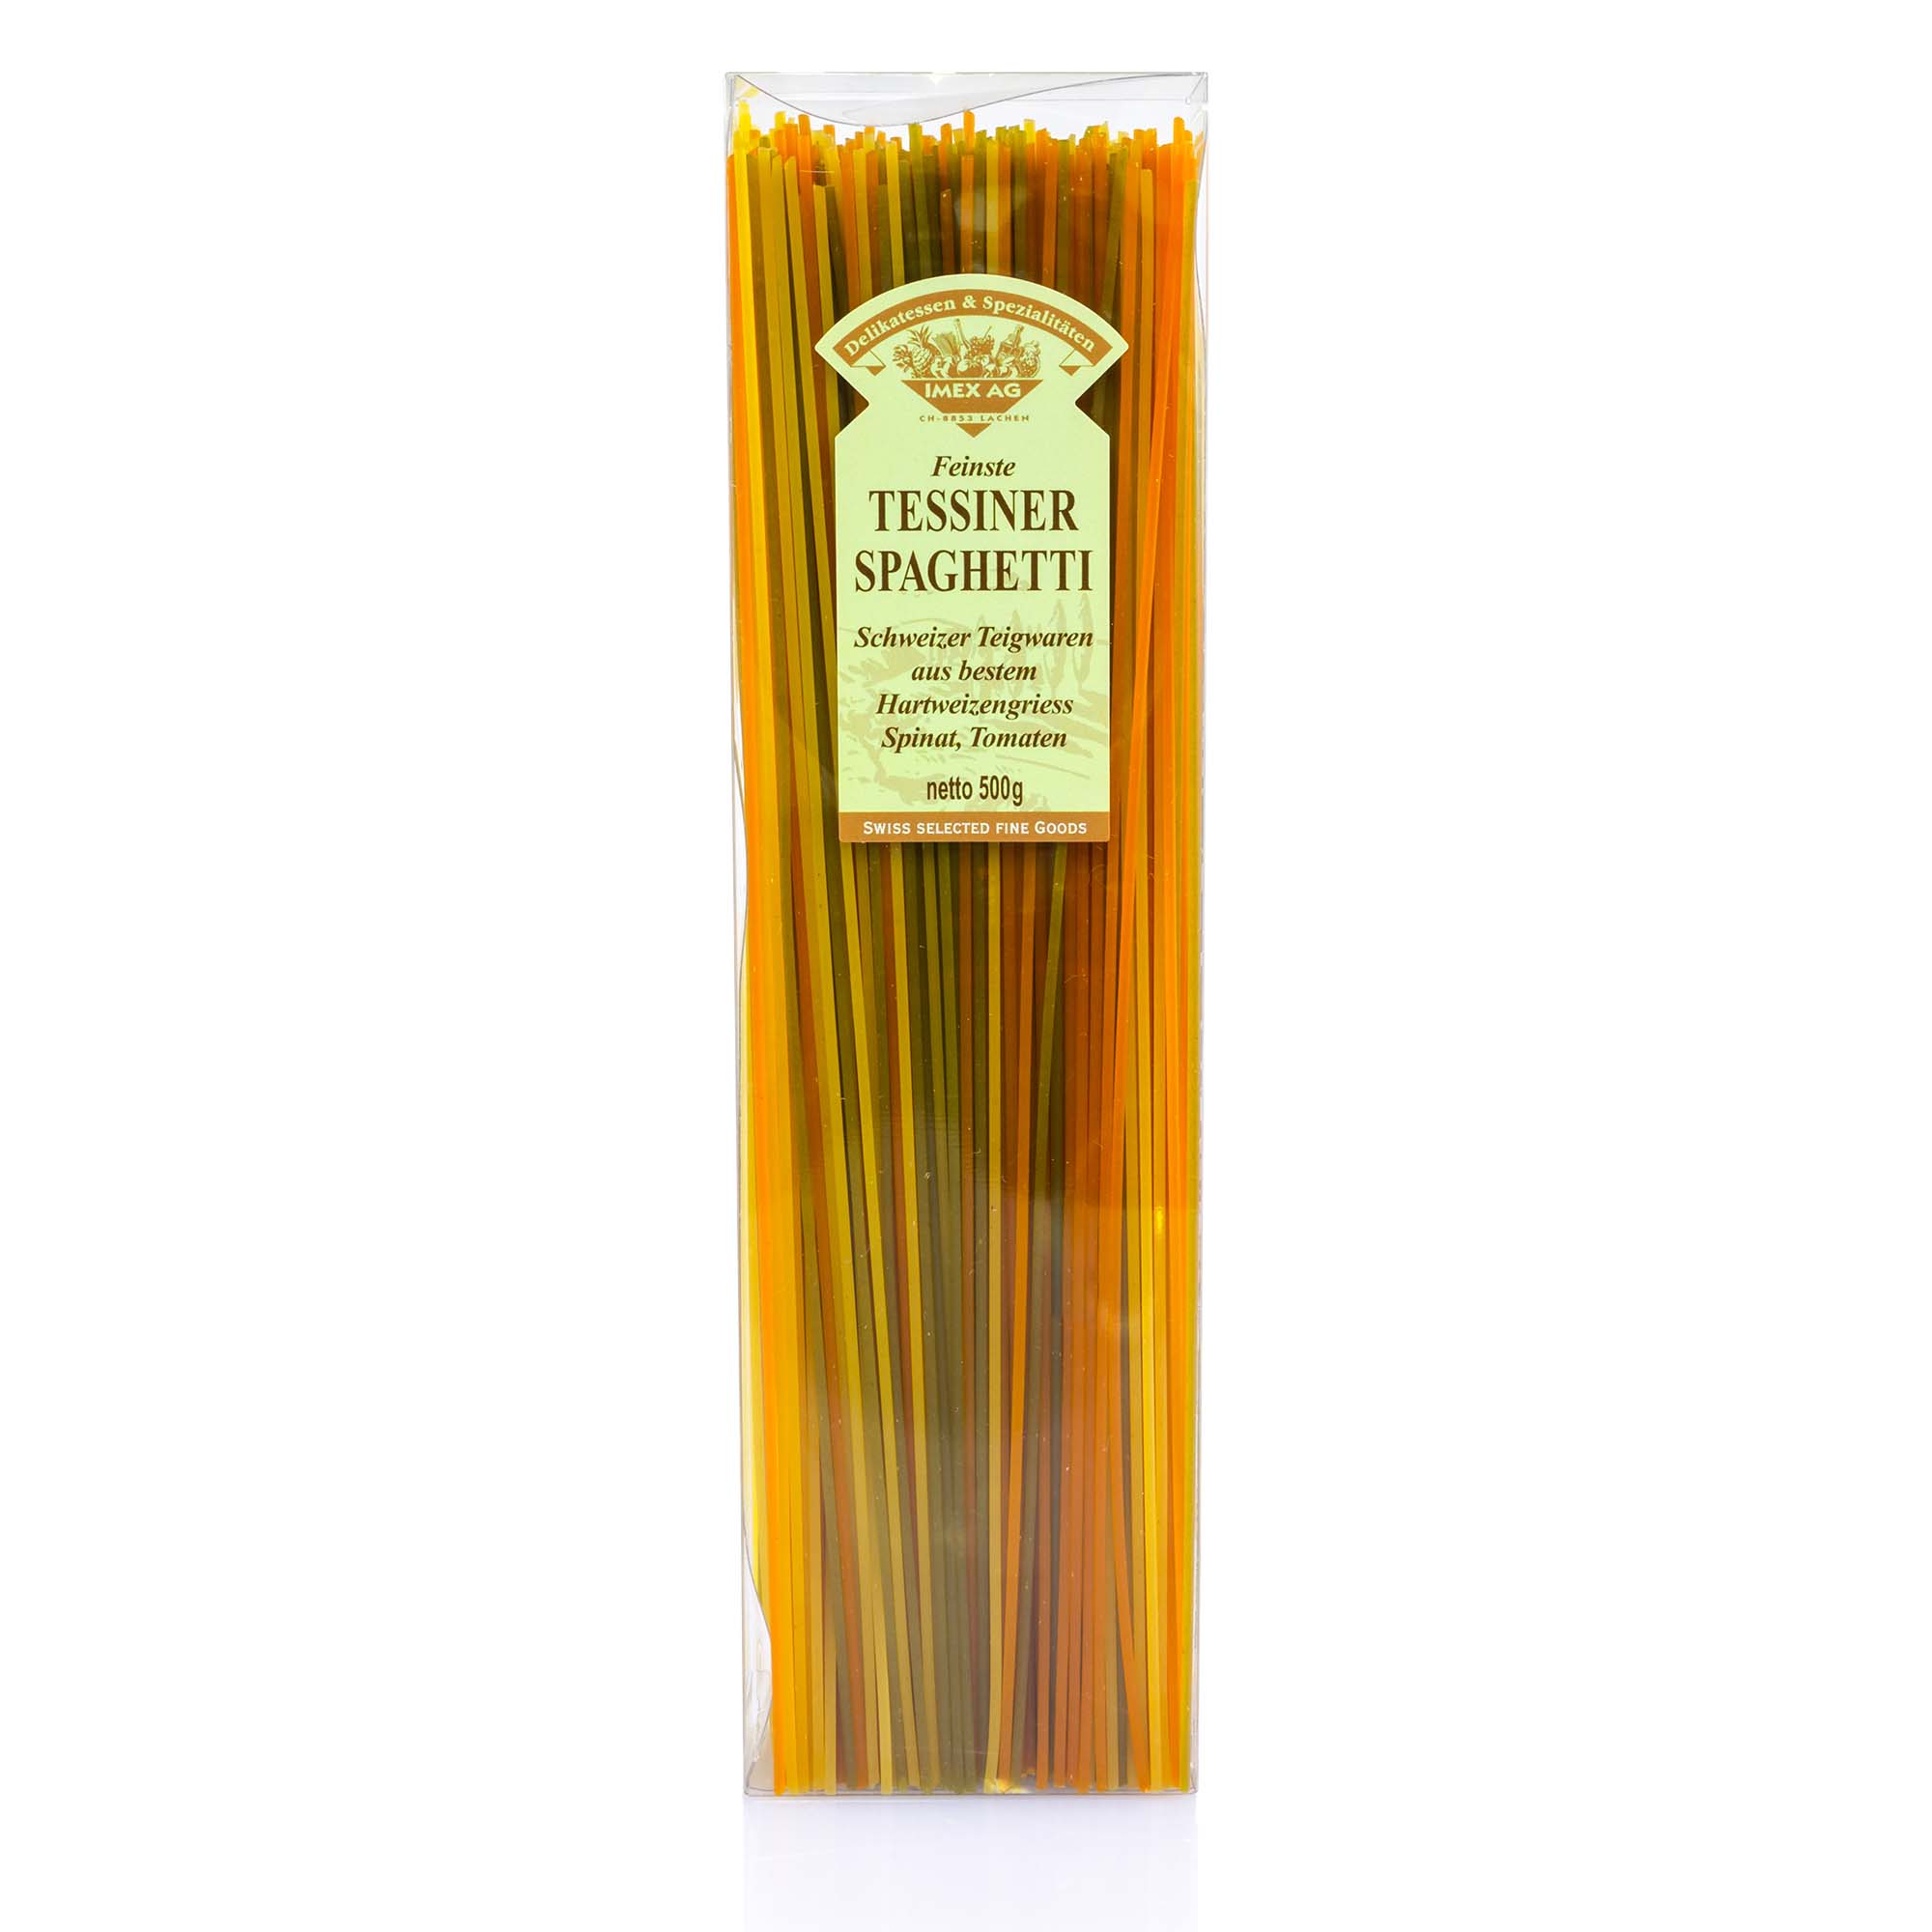 Tessiner Spaghetti Tricolore, 500g